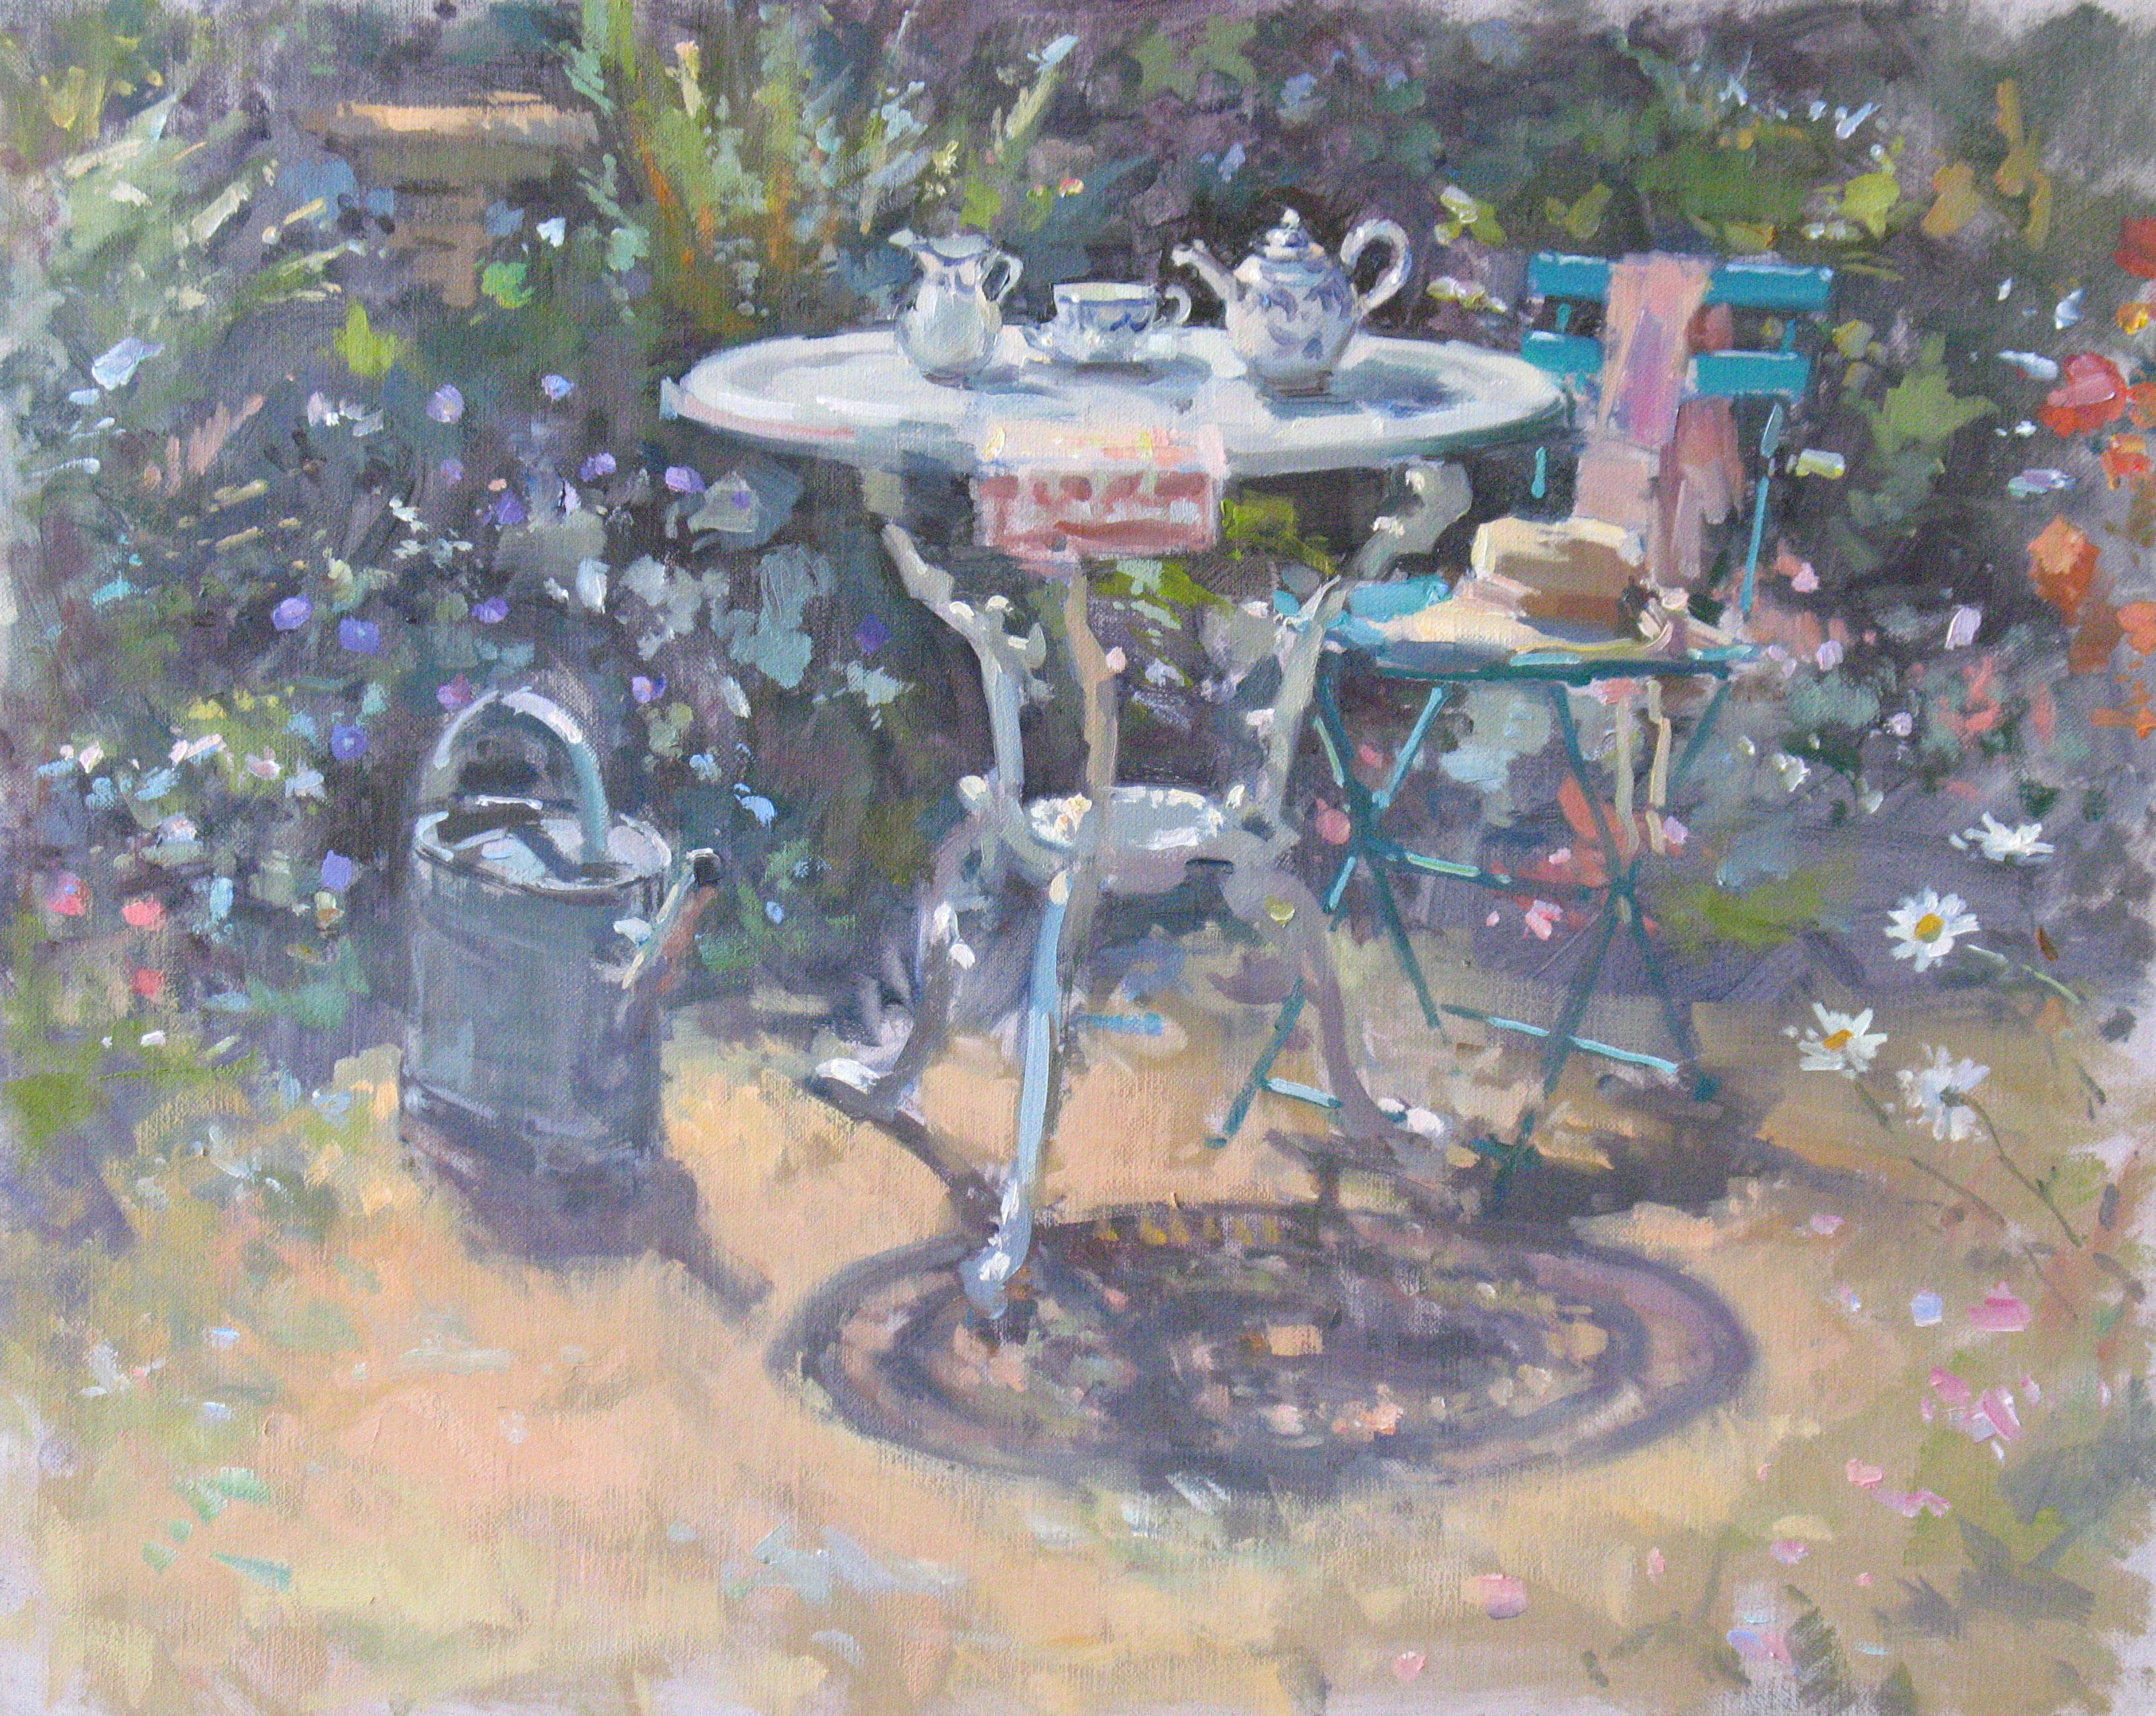 John D Martin RBA Abstract Painting - High Summer -  garden Original still life oil painting artwork impressionism